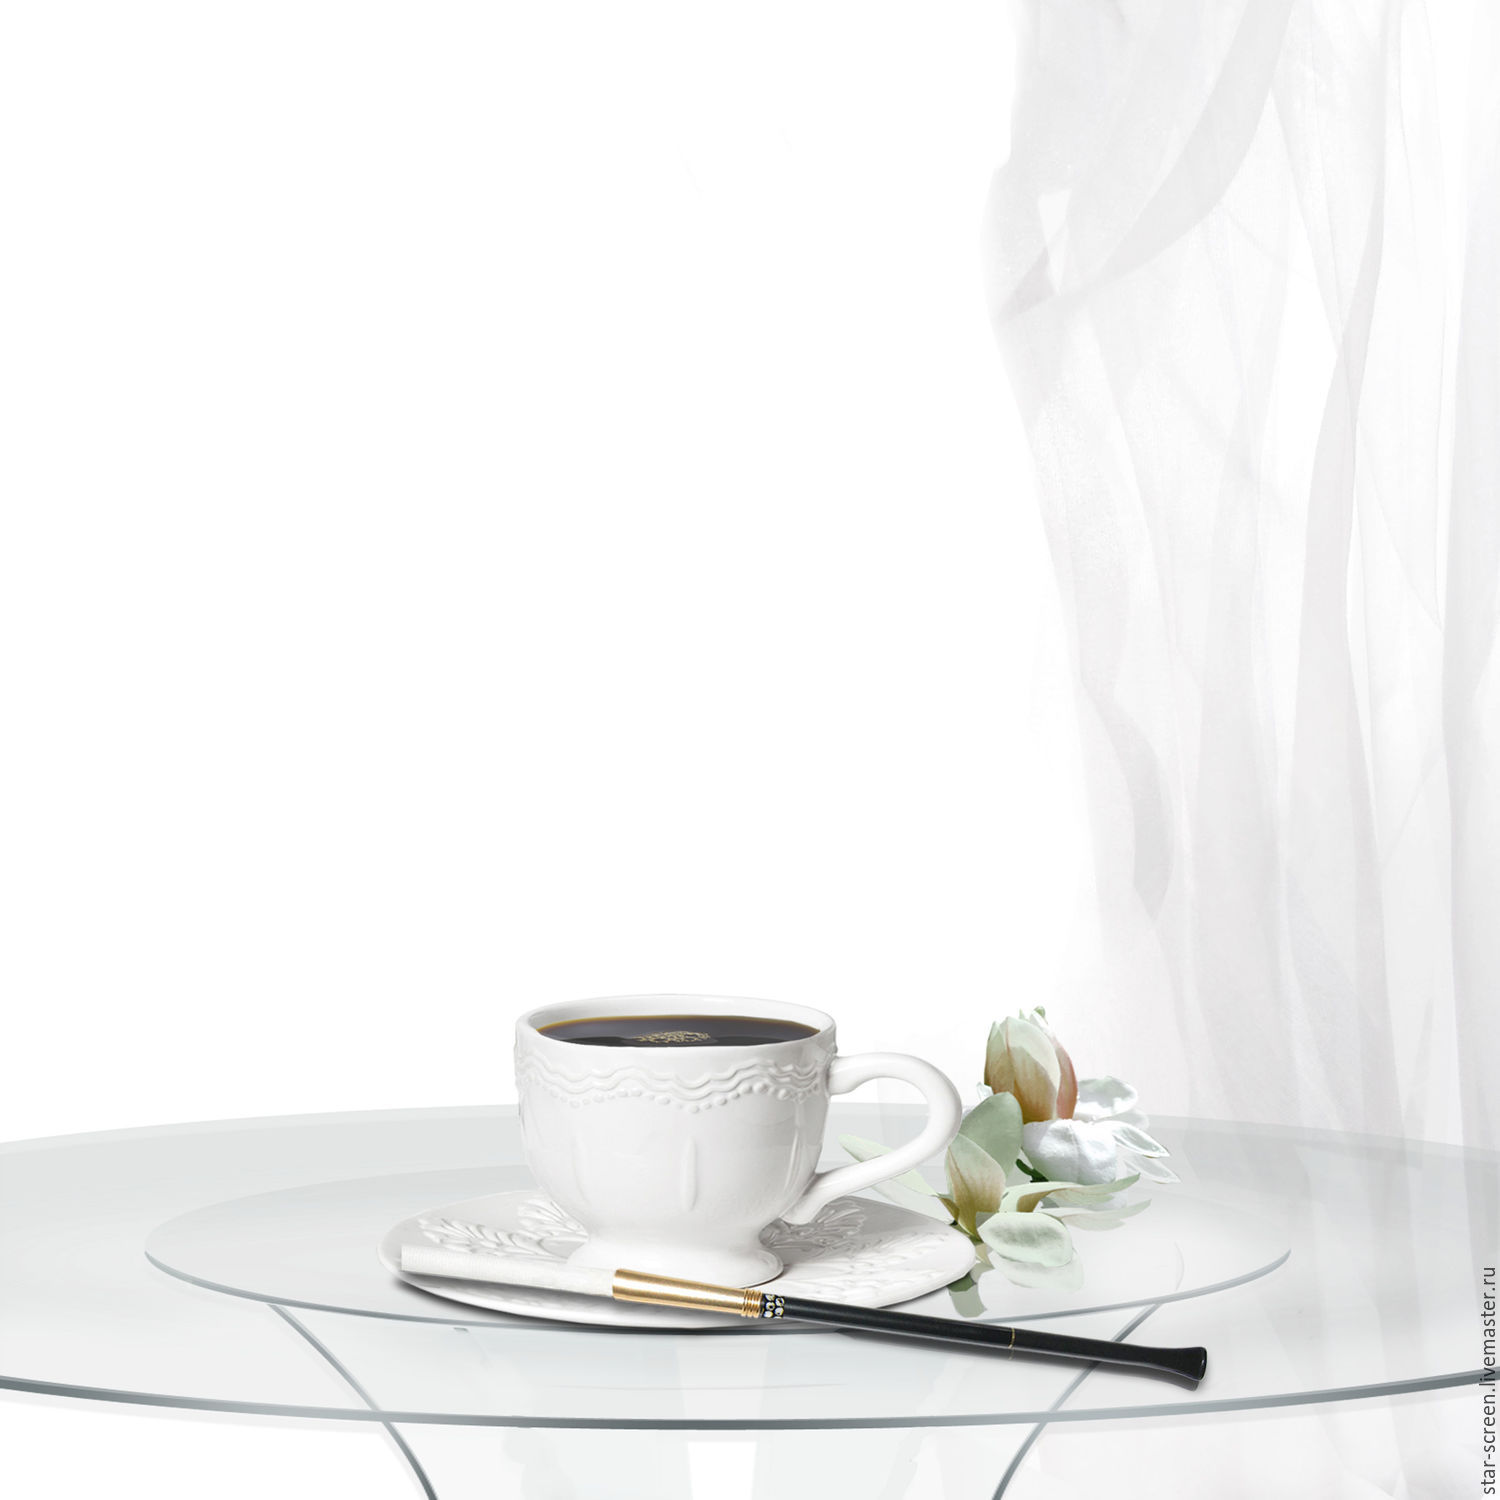 Кофе грей. Чашка кофе на белом столе. Чашка кофе на сером фоне. Утренний кофе на сером фоне. Утренний кофе белый фон.